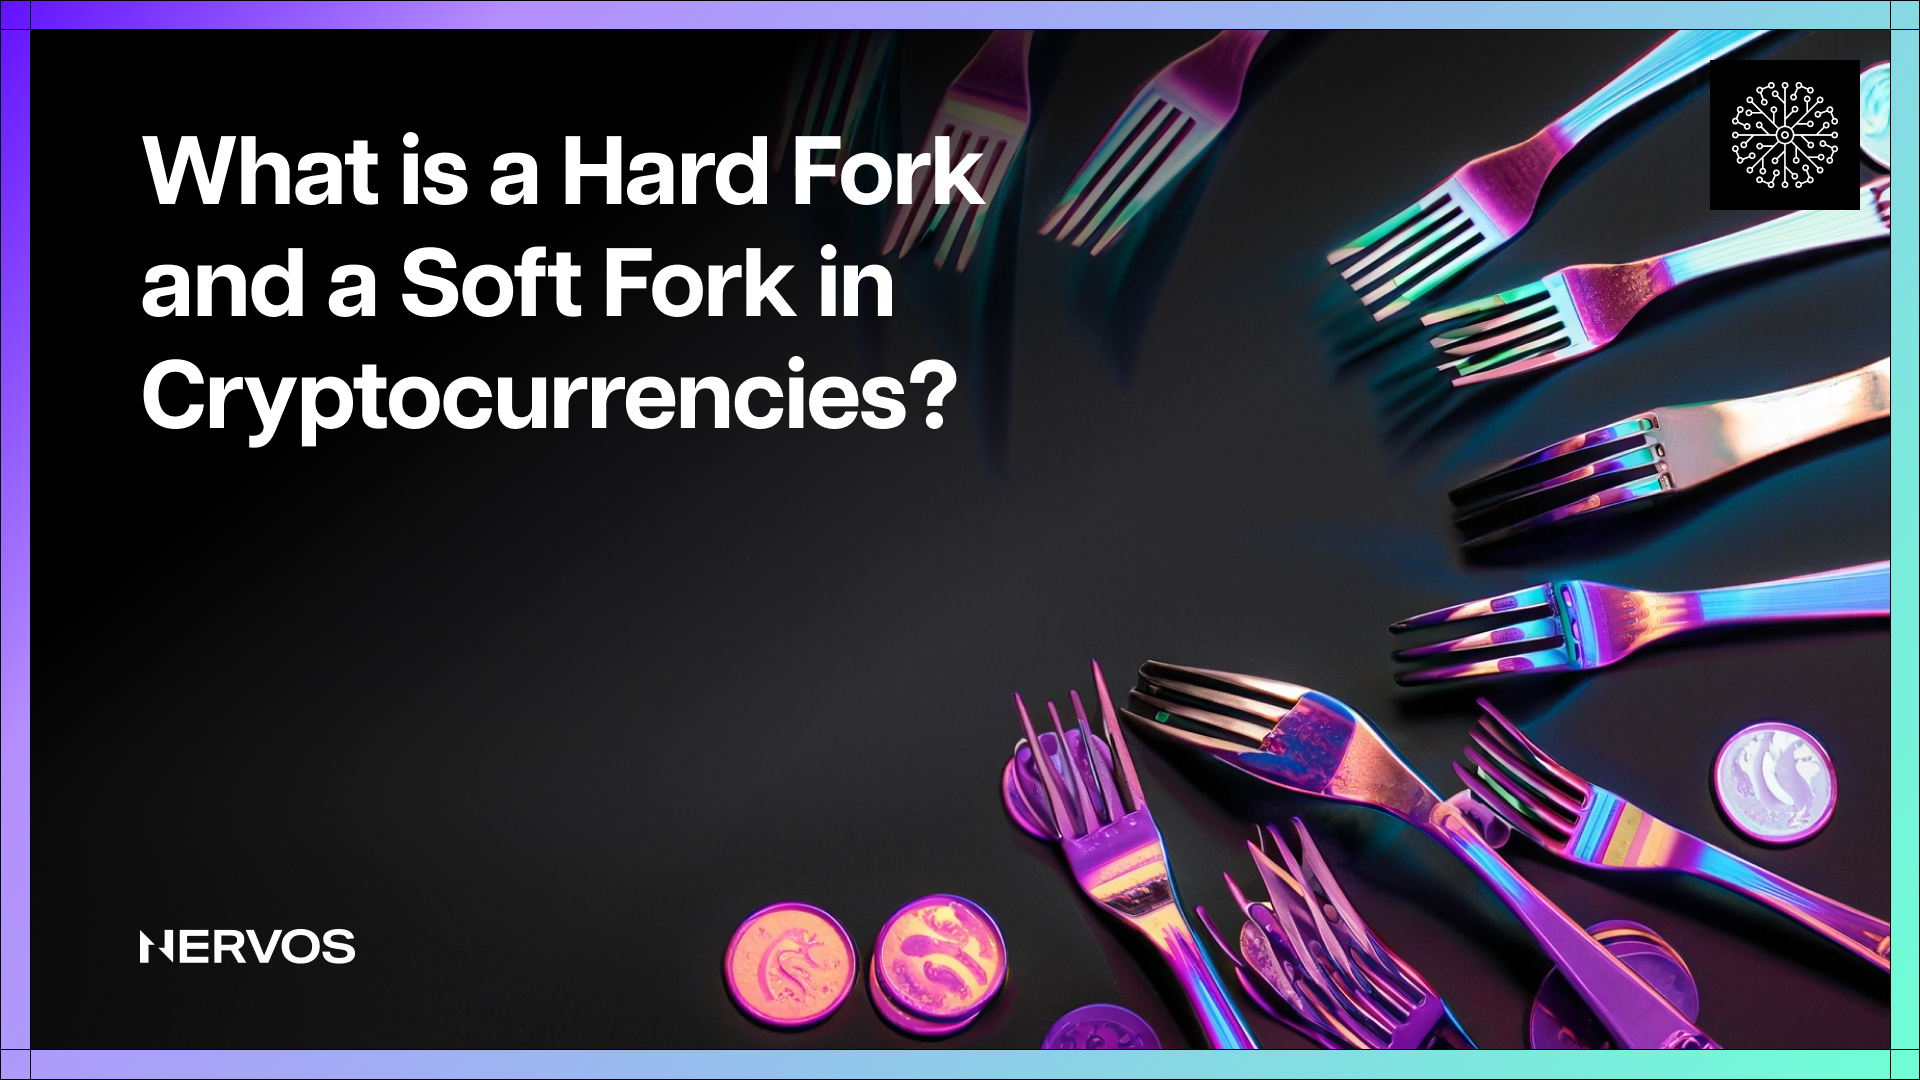 O que é um Hard Fork?